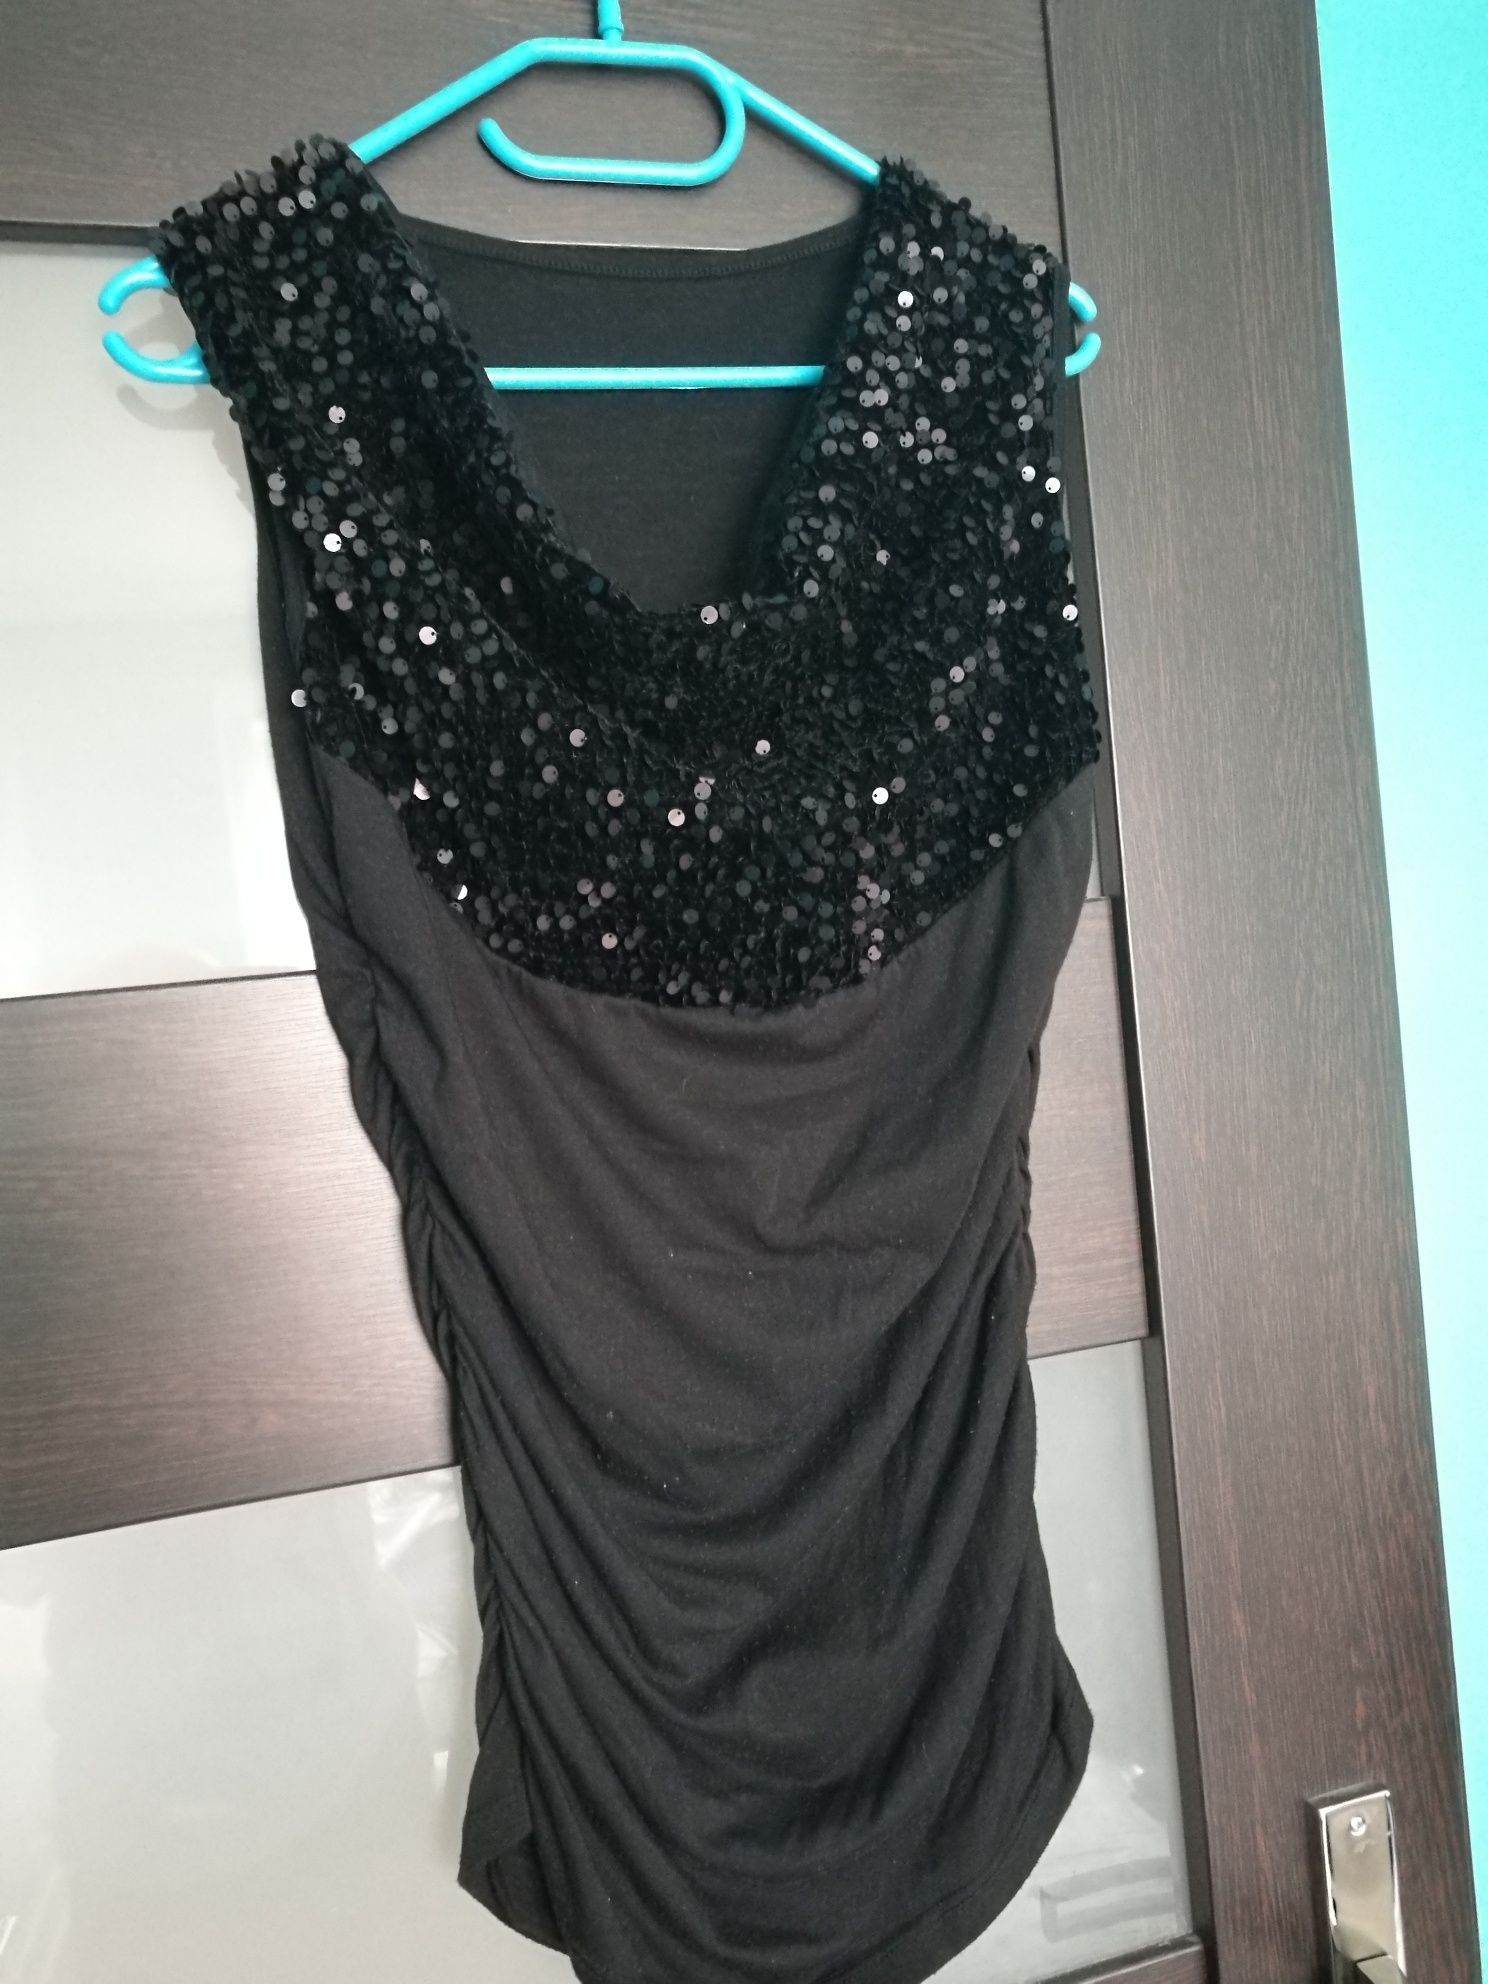 Czarna bluzka z cekinami, dekoltem, na ciążowy brzuszek, rozmiar 36-38